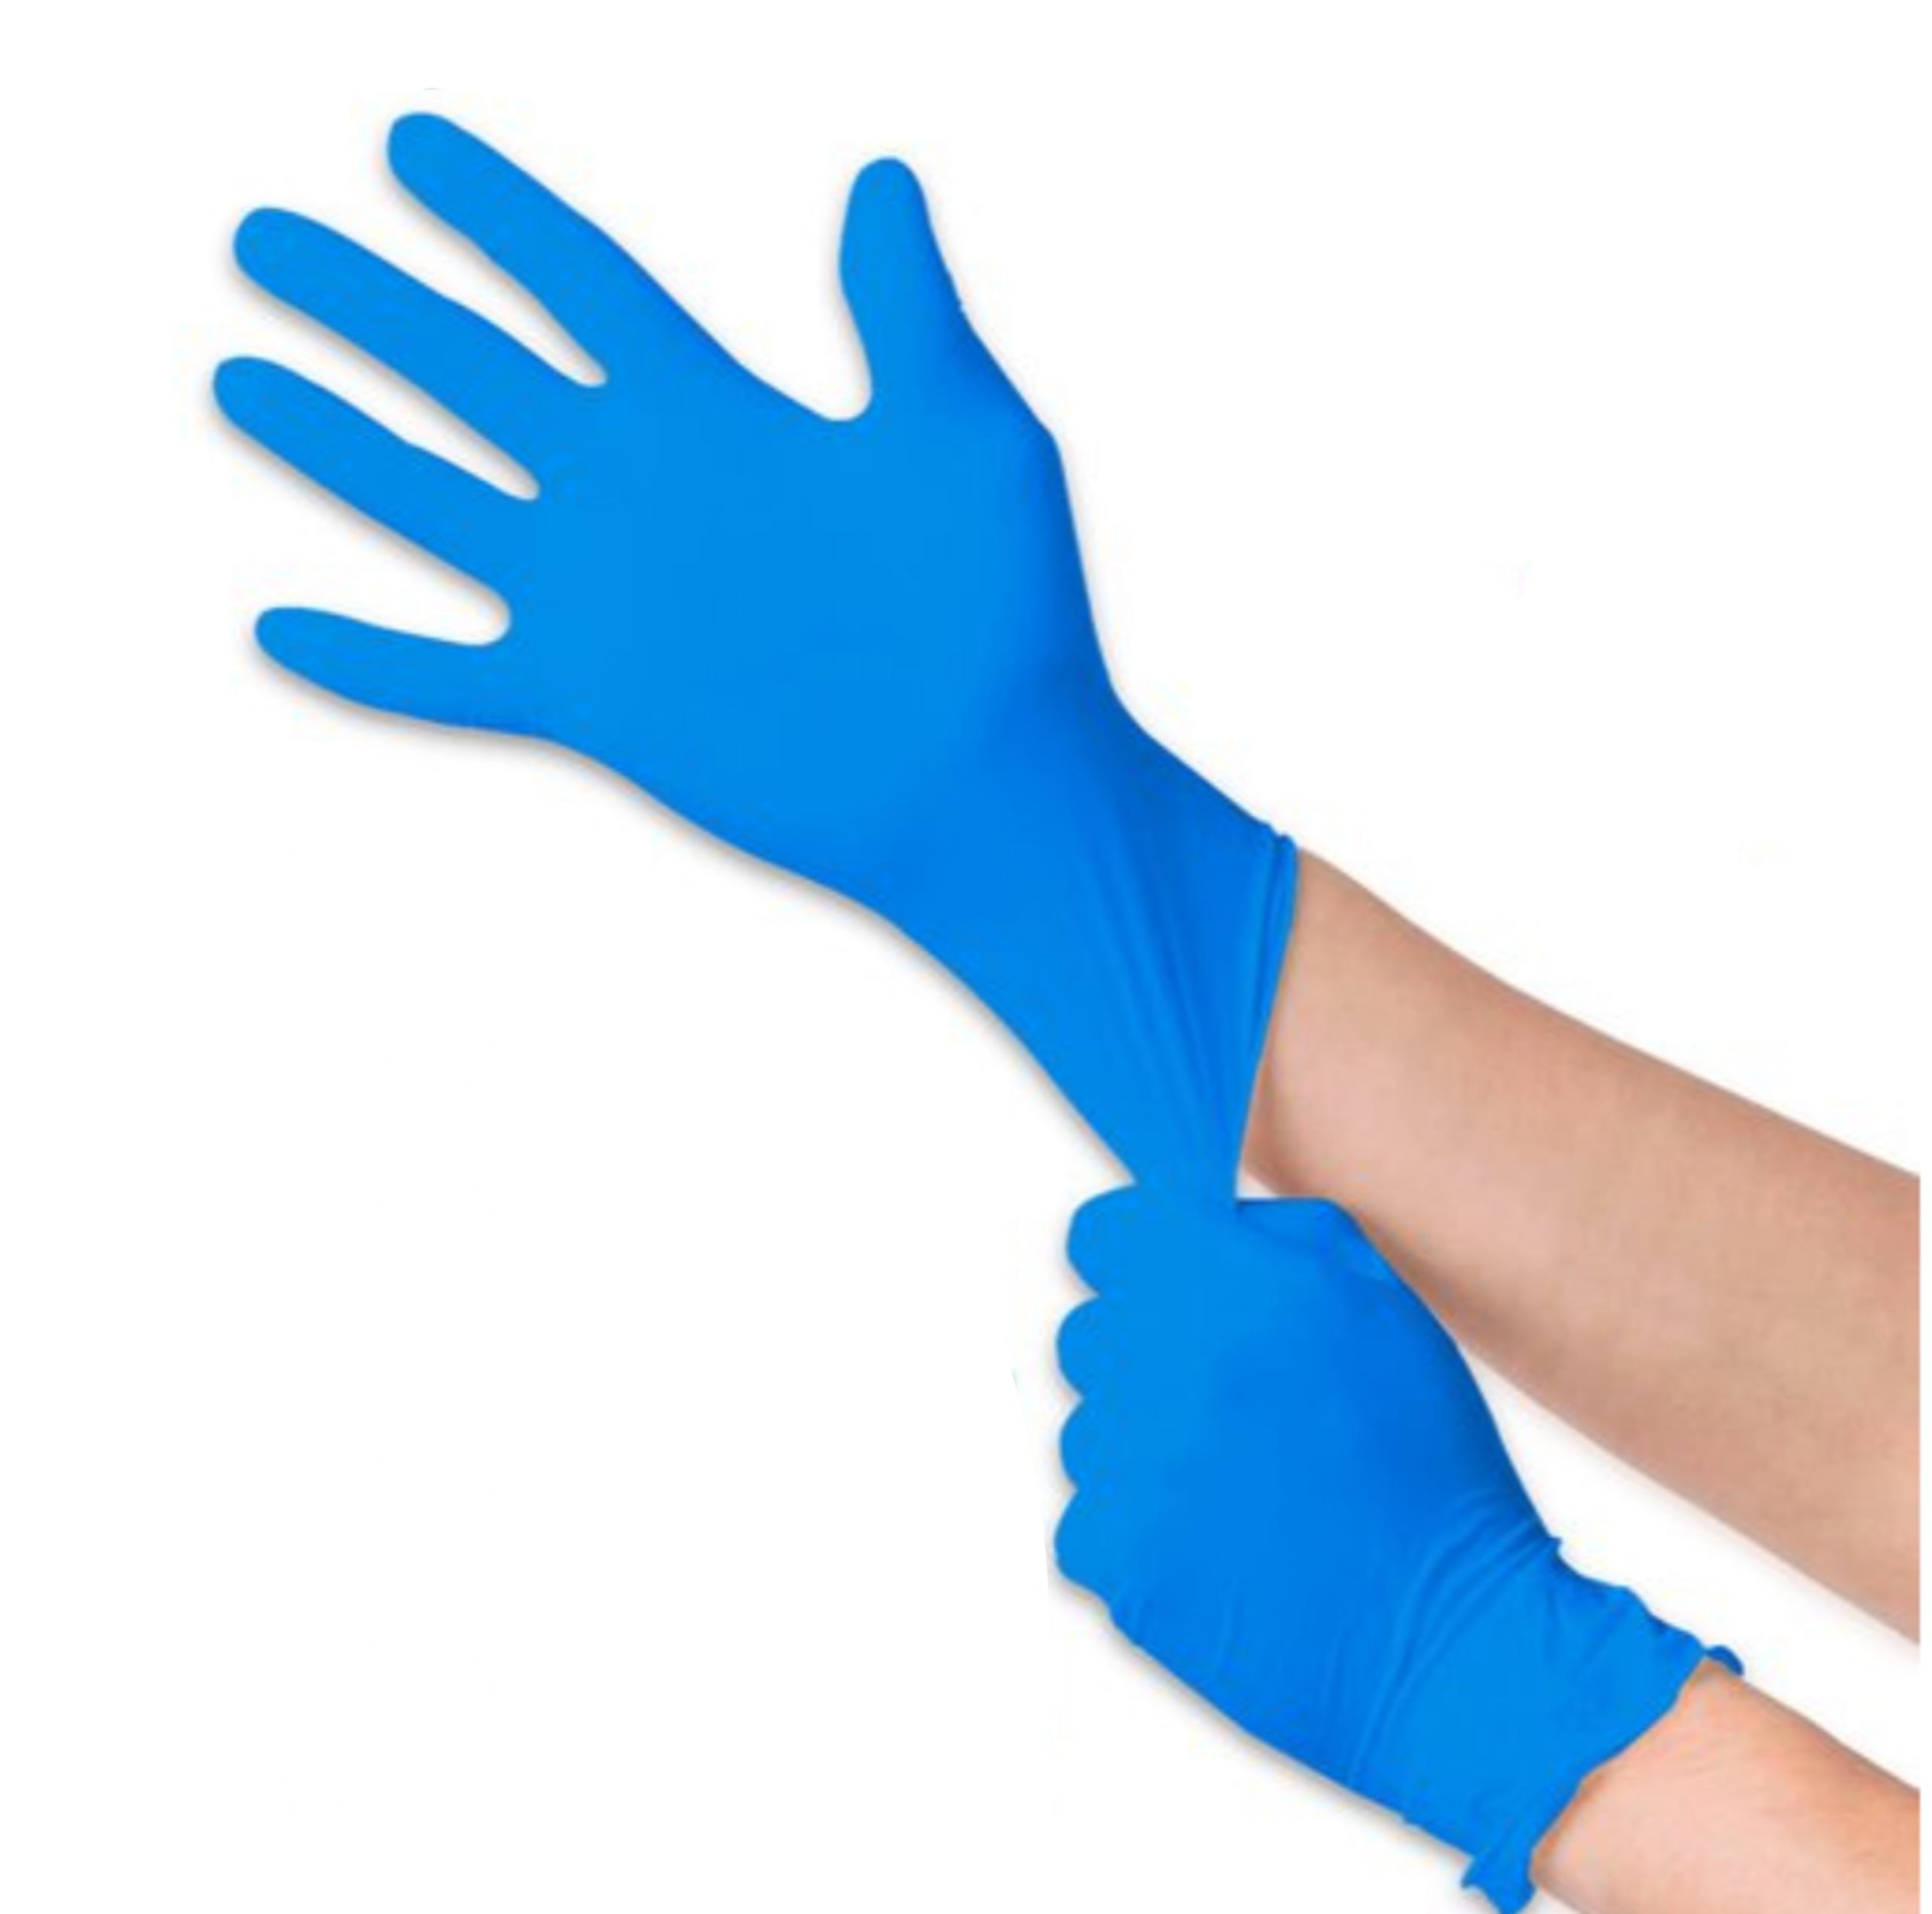 https://vitapersonallc.com/wp-content/uploads/2020/06/Nitrile-Gloves-1-scaled.jpg